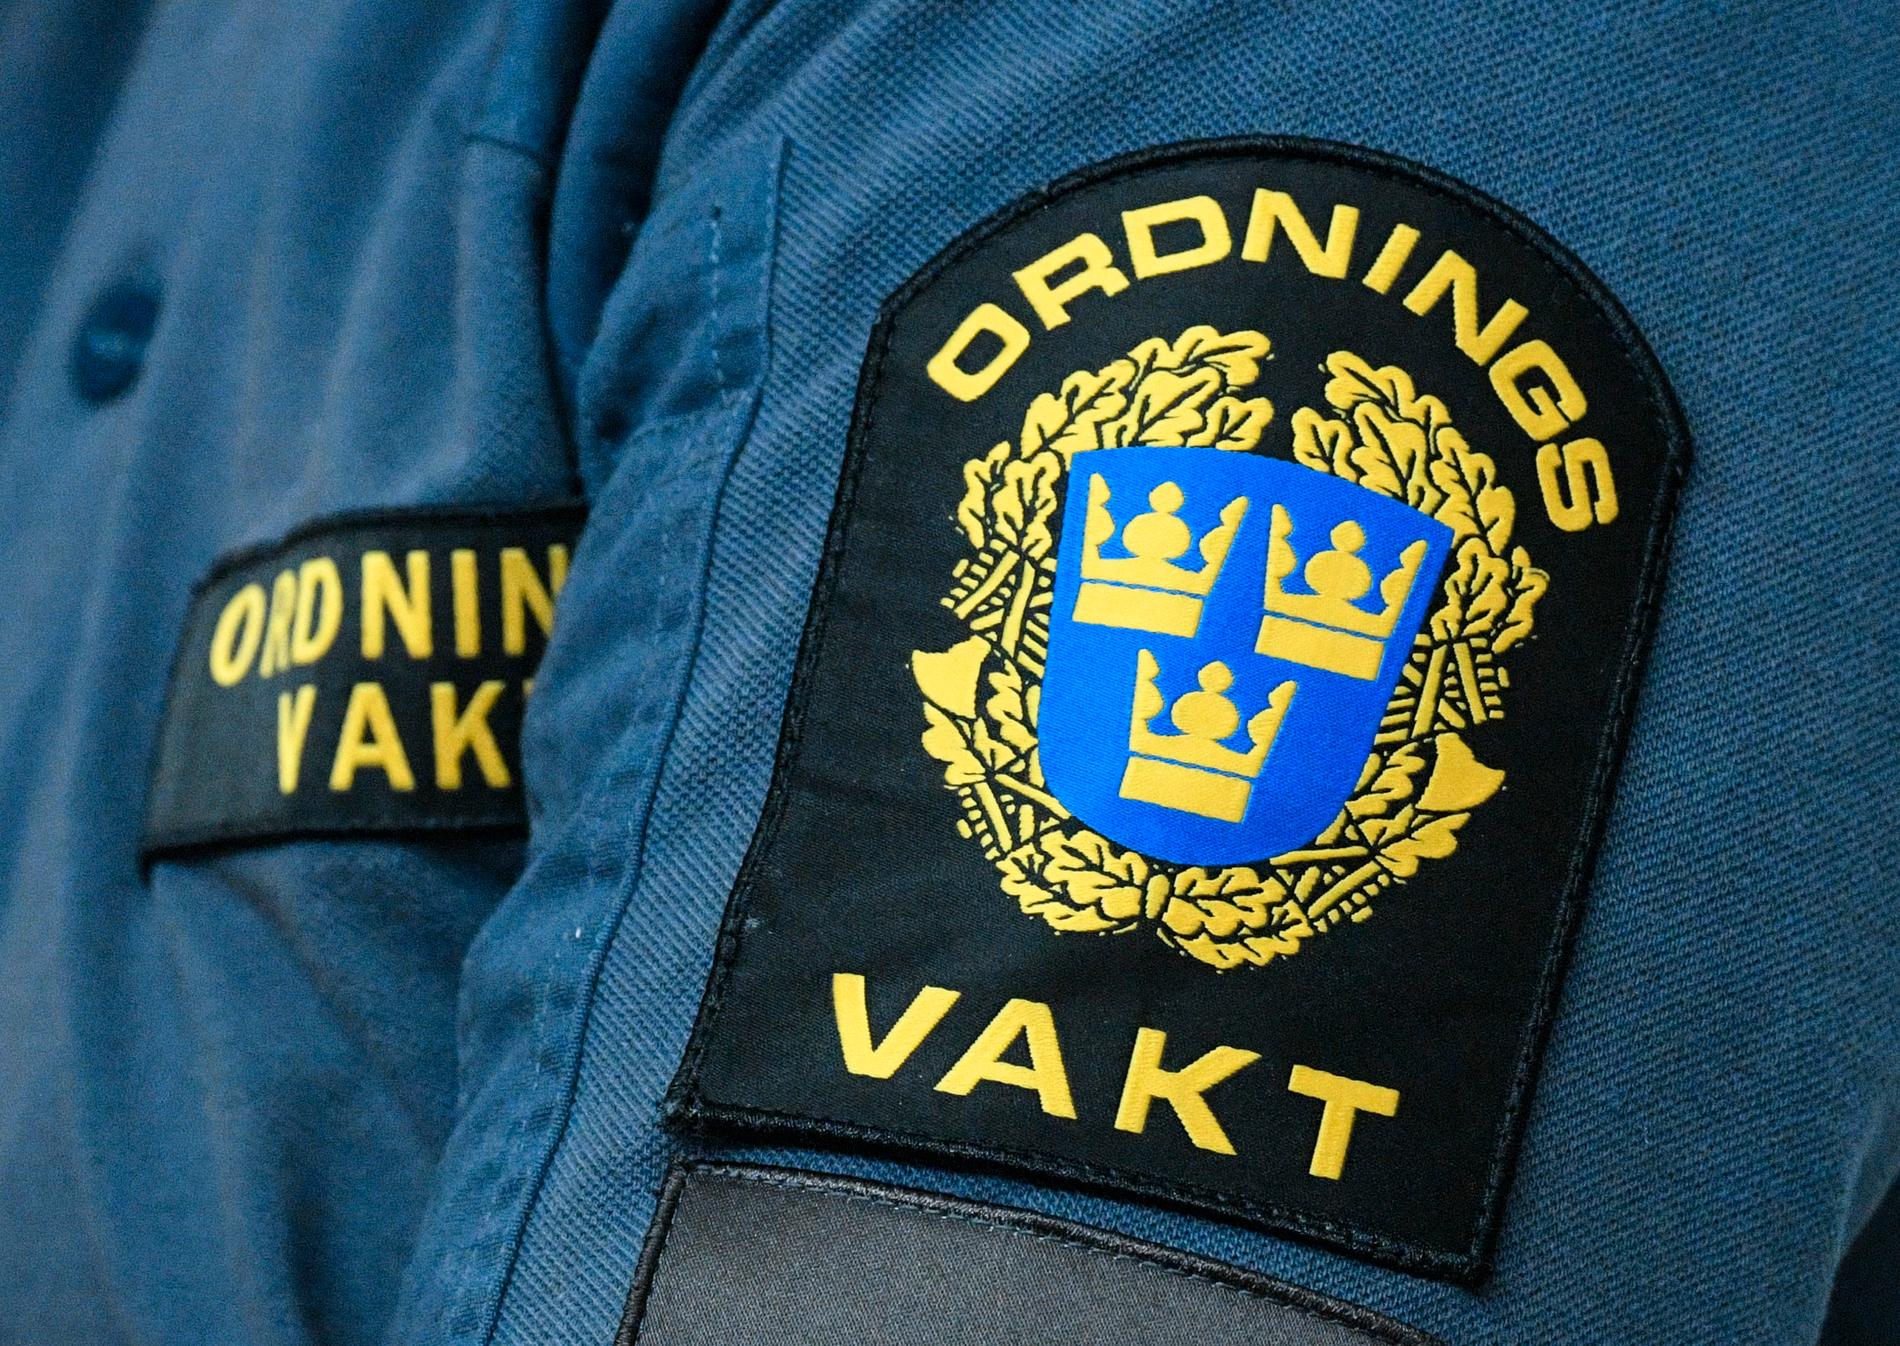 En ordningsvakt åtalas misstänkt för misshandel efter ett ingripande i Östersund 2020.